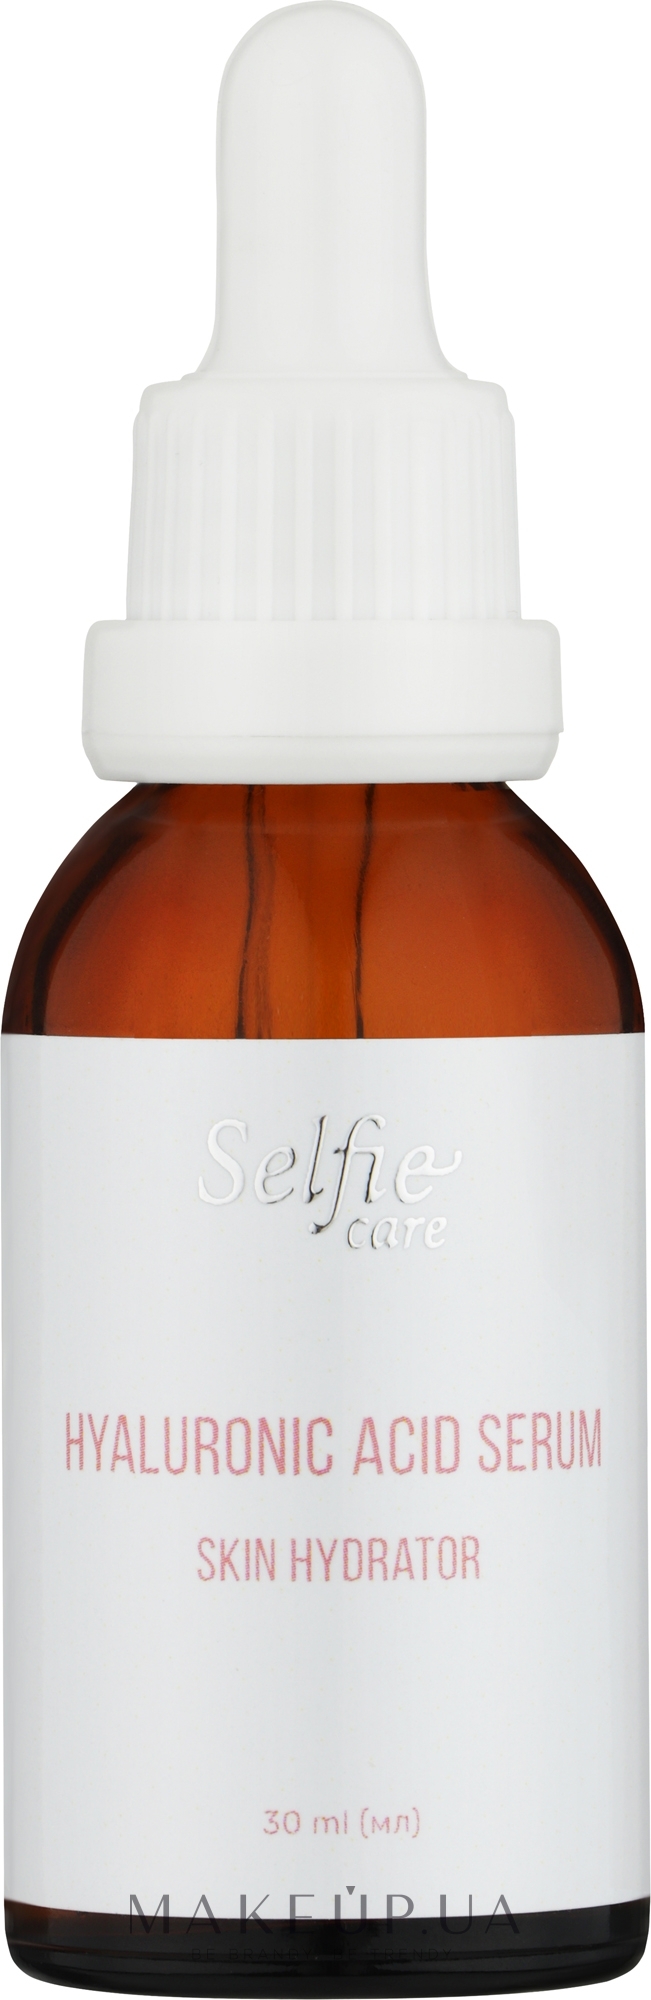 Зволожувальна сироватка для обличчя з гіалуроновою кислотою - Selfie Care Hyaluronic Acid Serum Skin Hydrator — фото 30ml